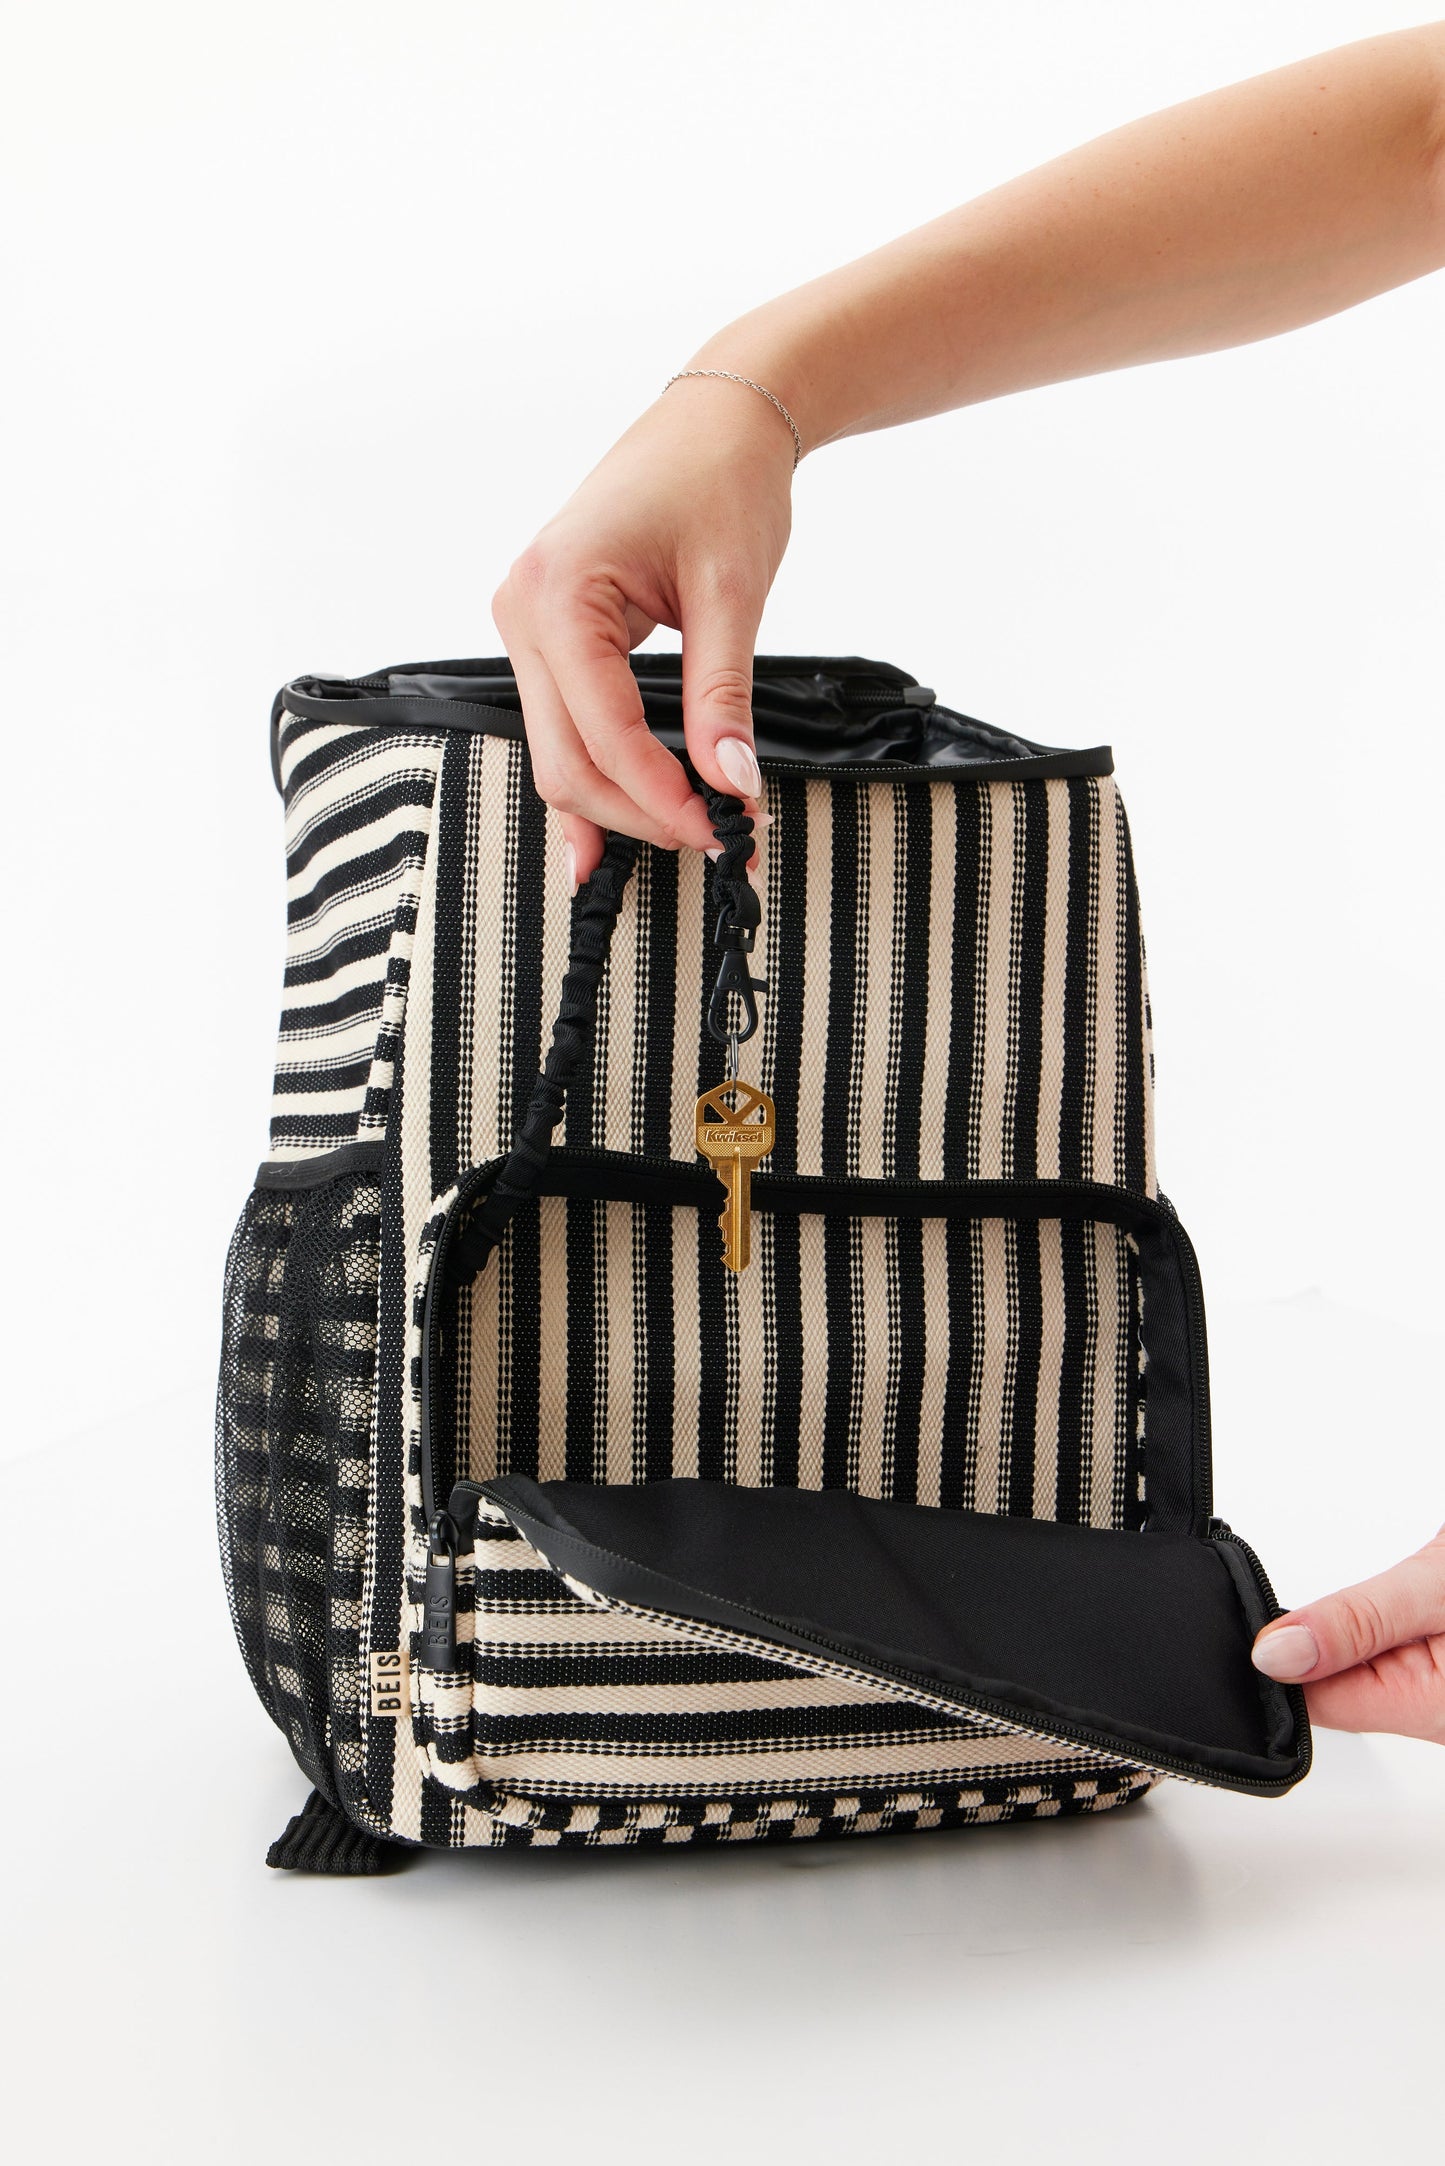 The Backpack Cooler in Black Stripe